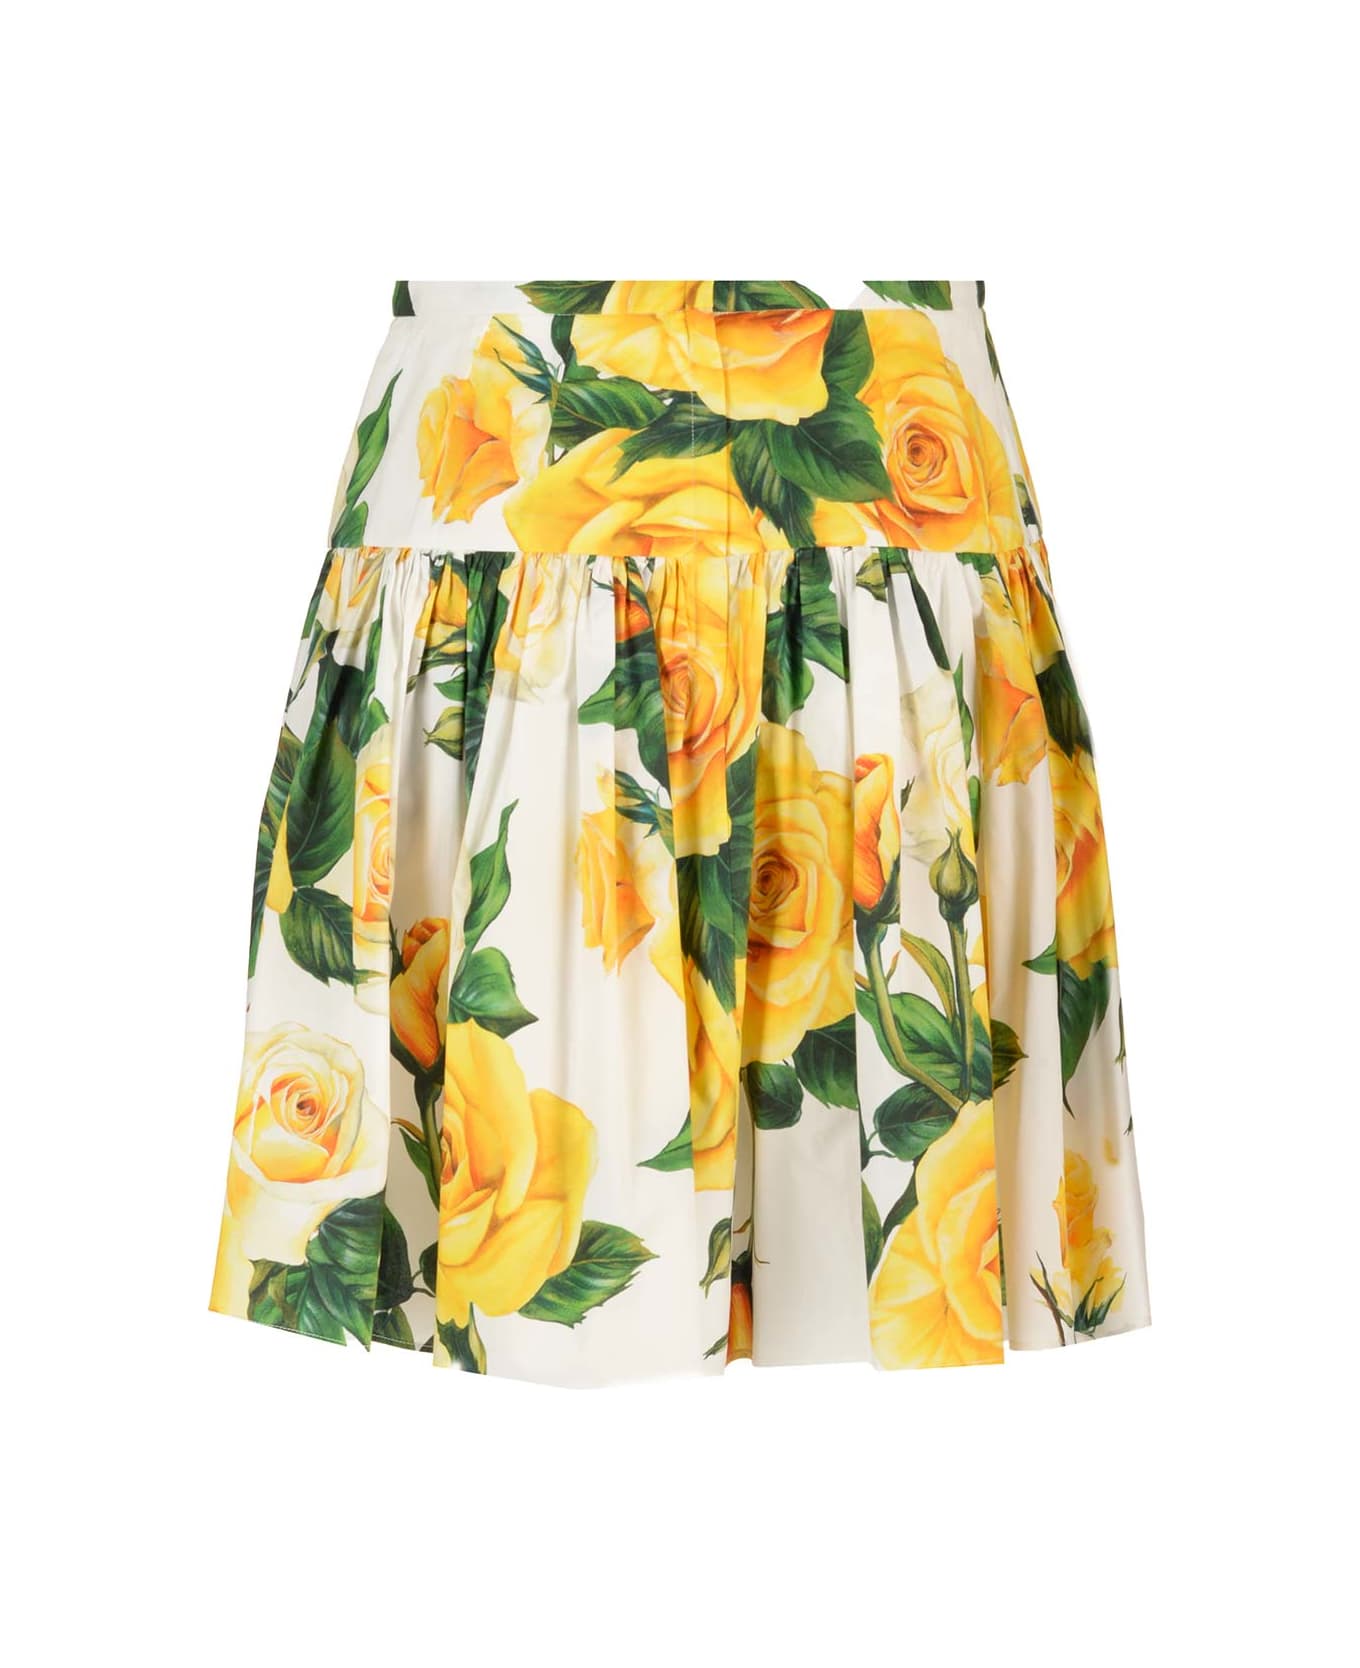 Dolce & Gabbana Roses Mini Skirt - Vo Rose Gialle スカート